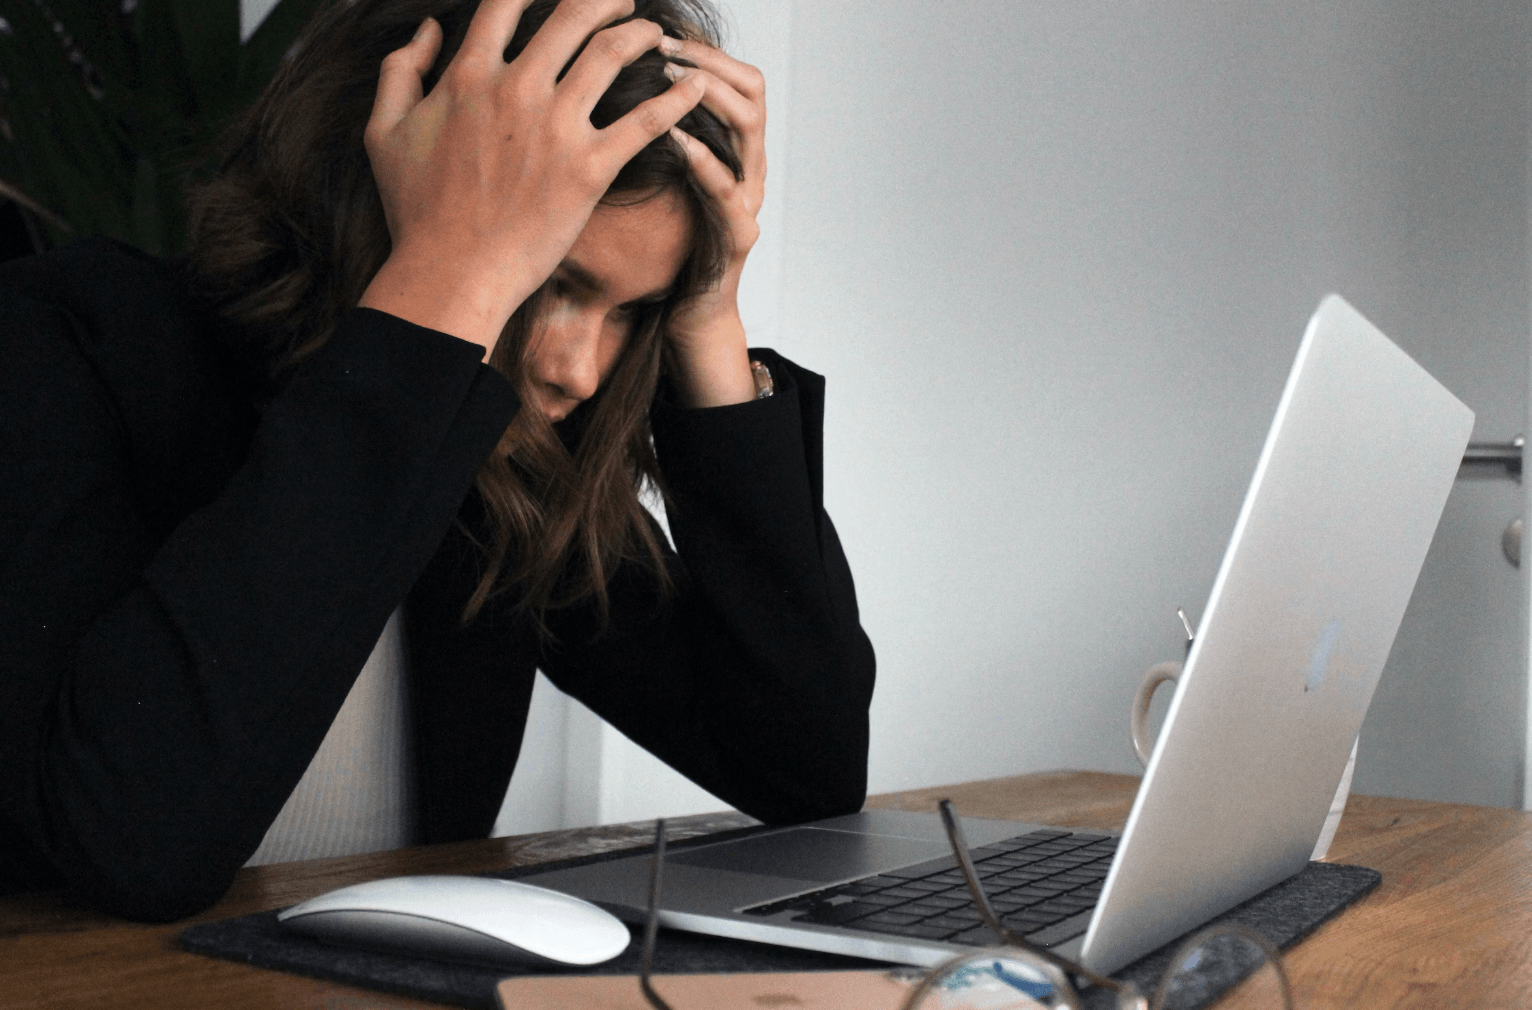 Can EMFs worsen Stress?